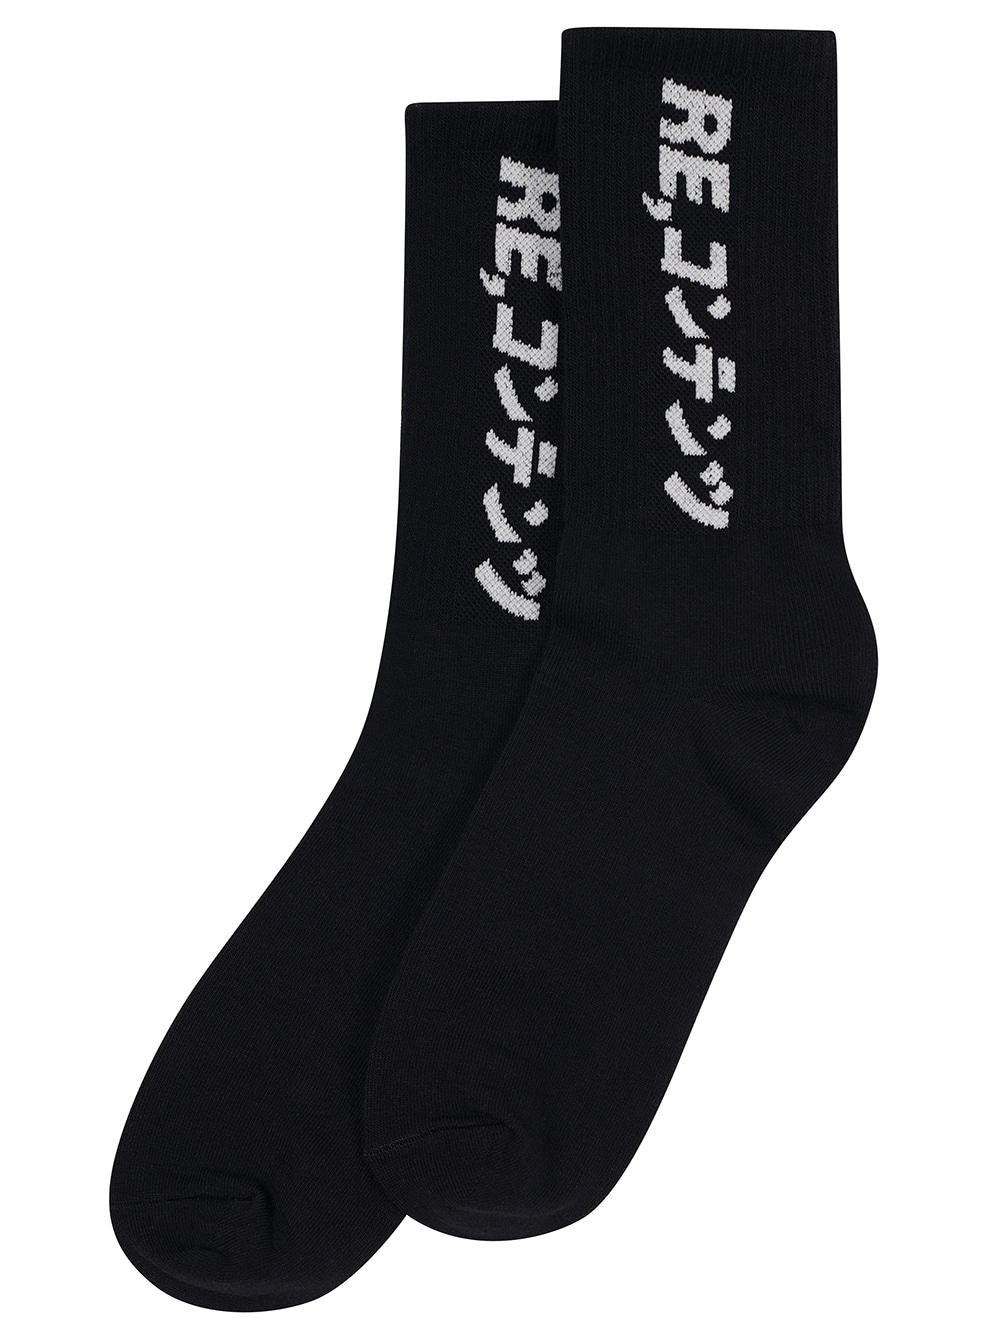 RC basic socks (black)